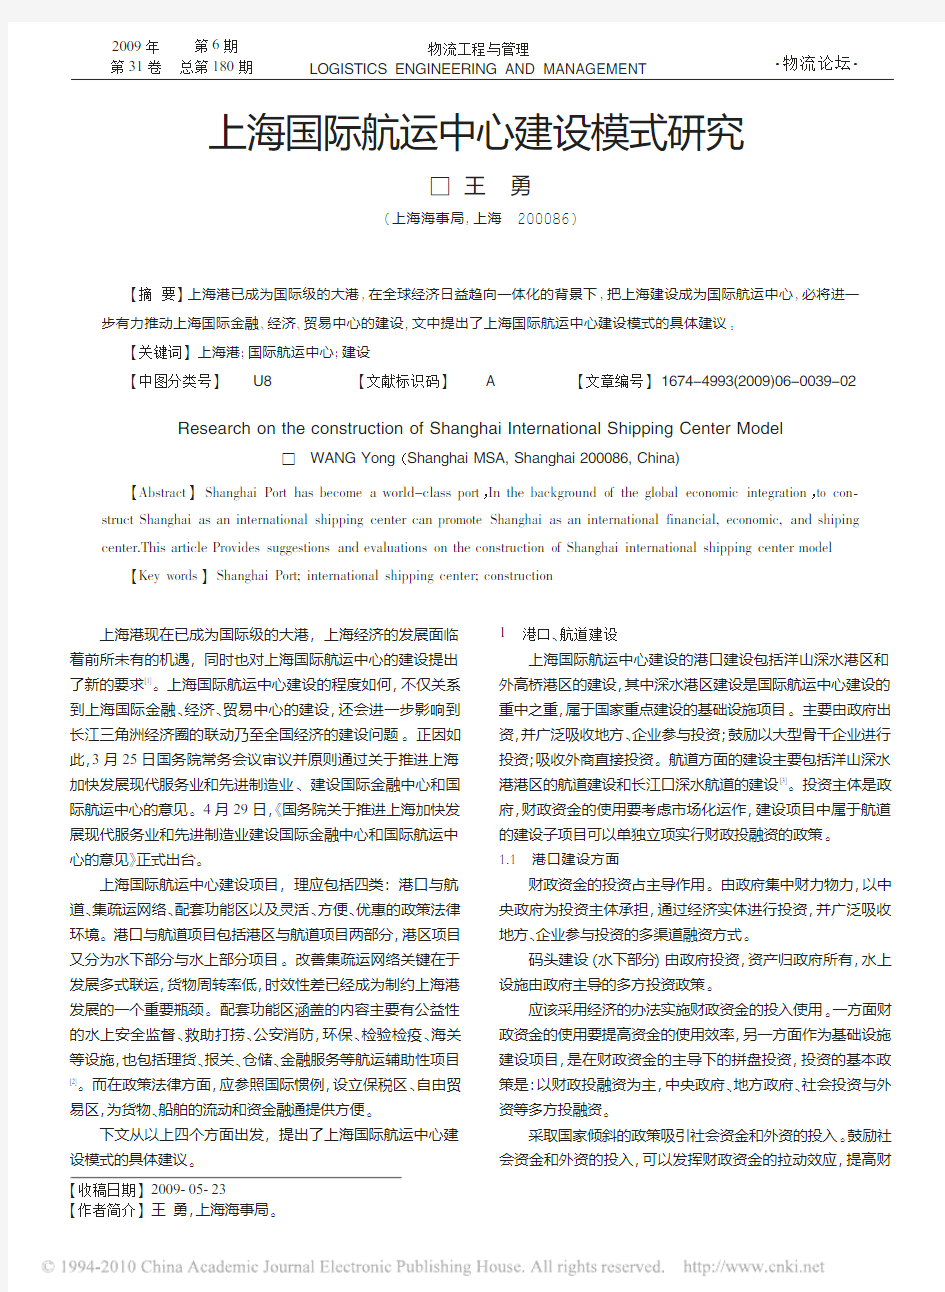 上海国际航运中心建设模式研究_王勇